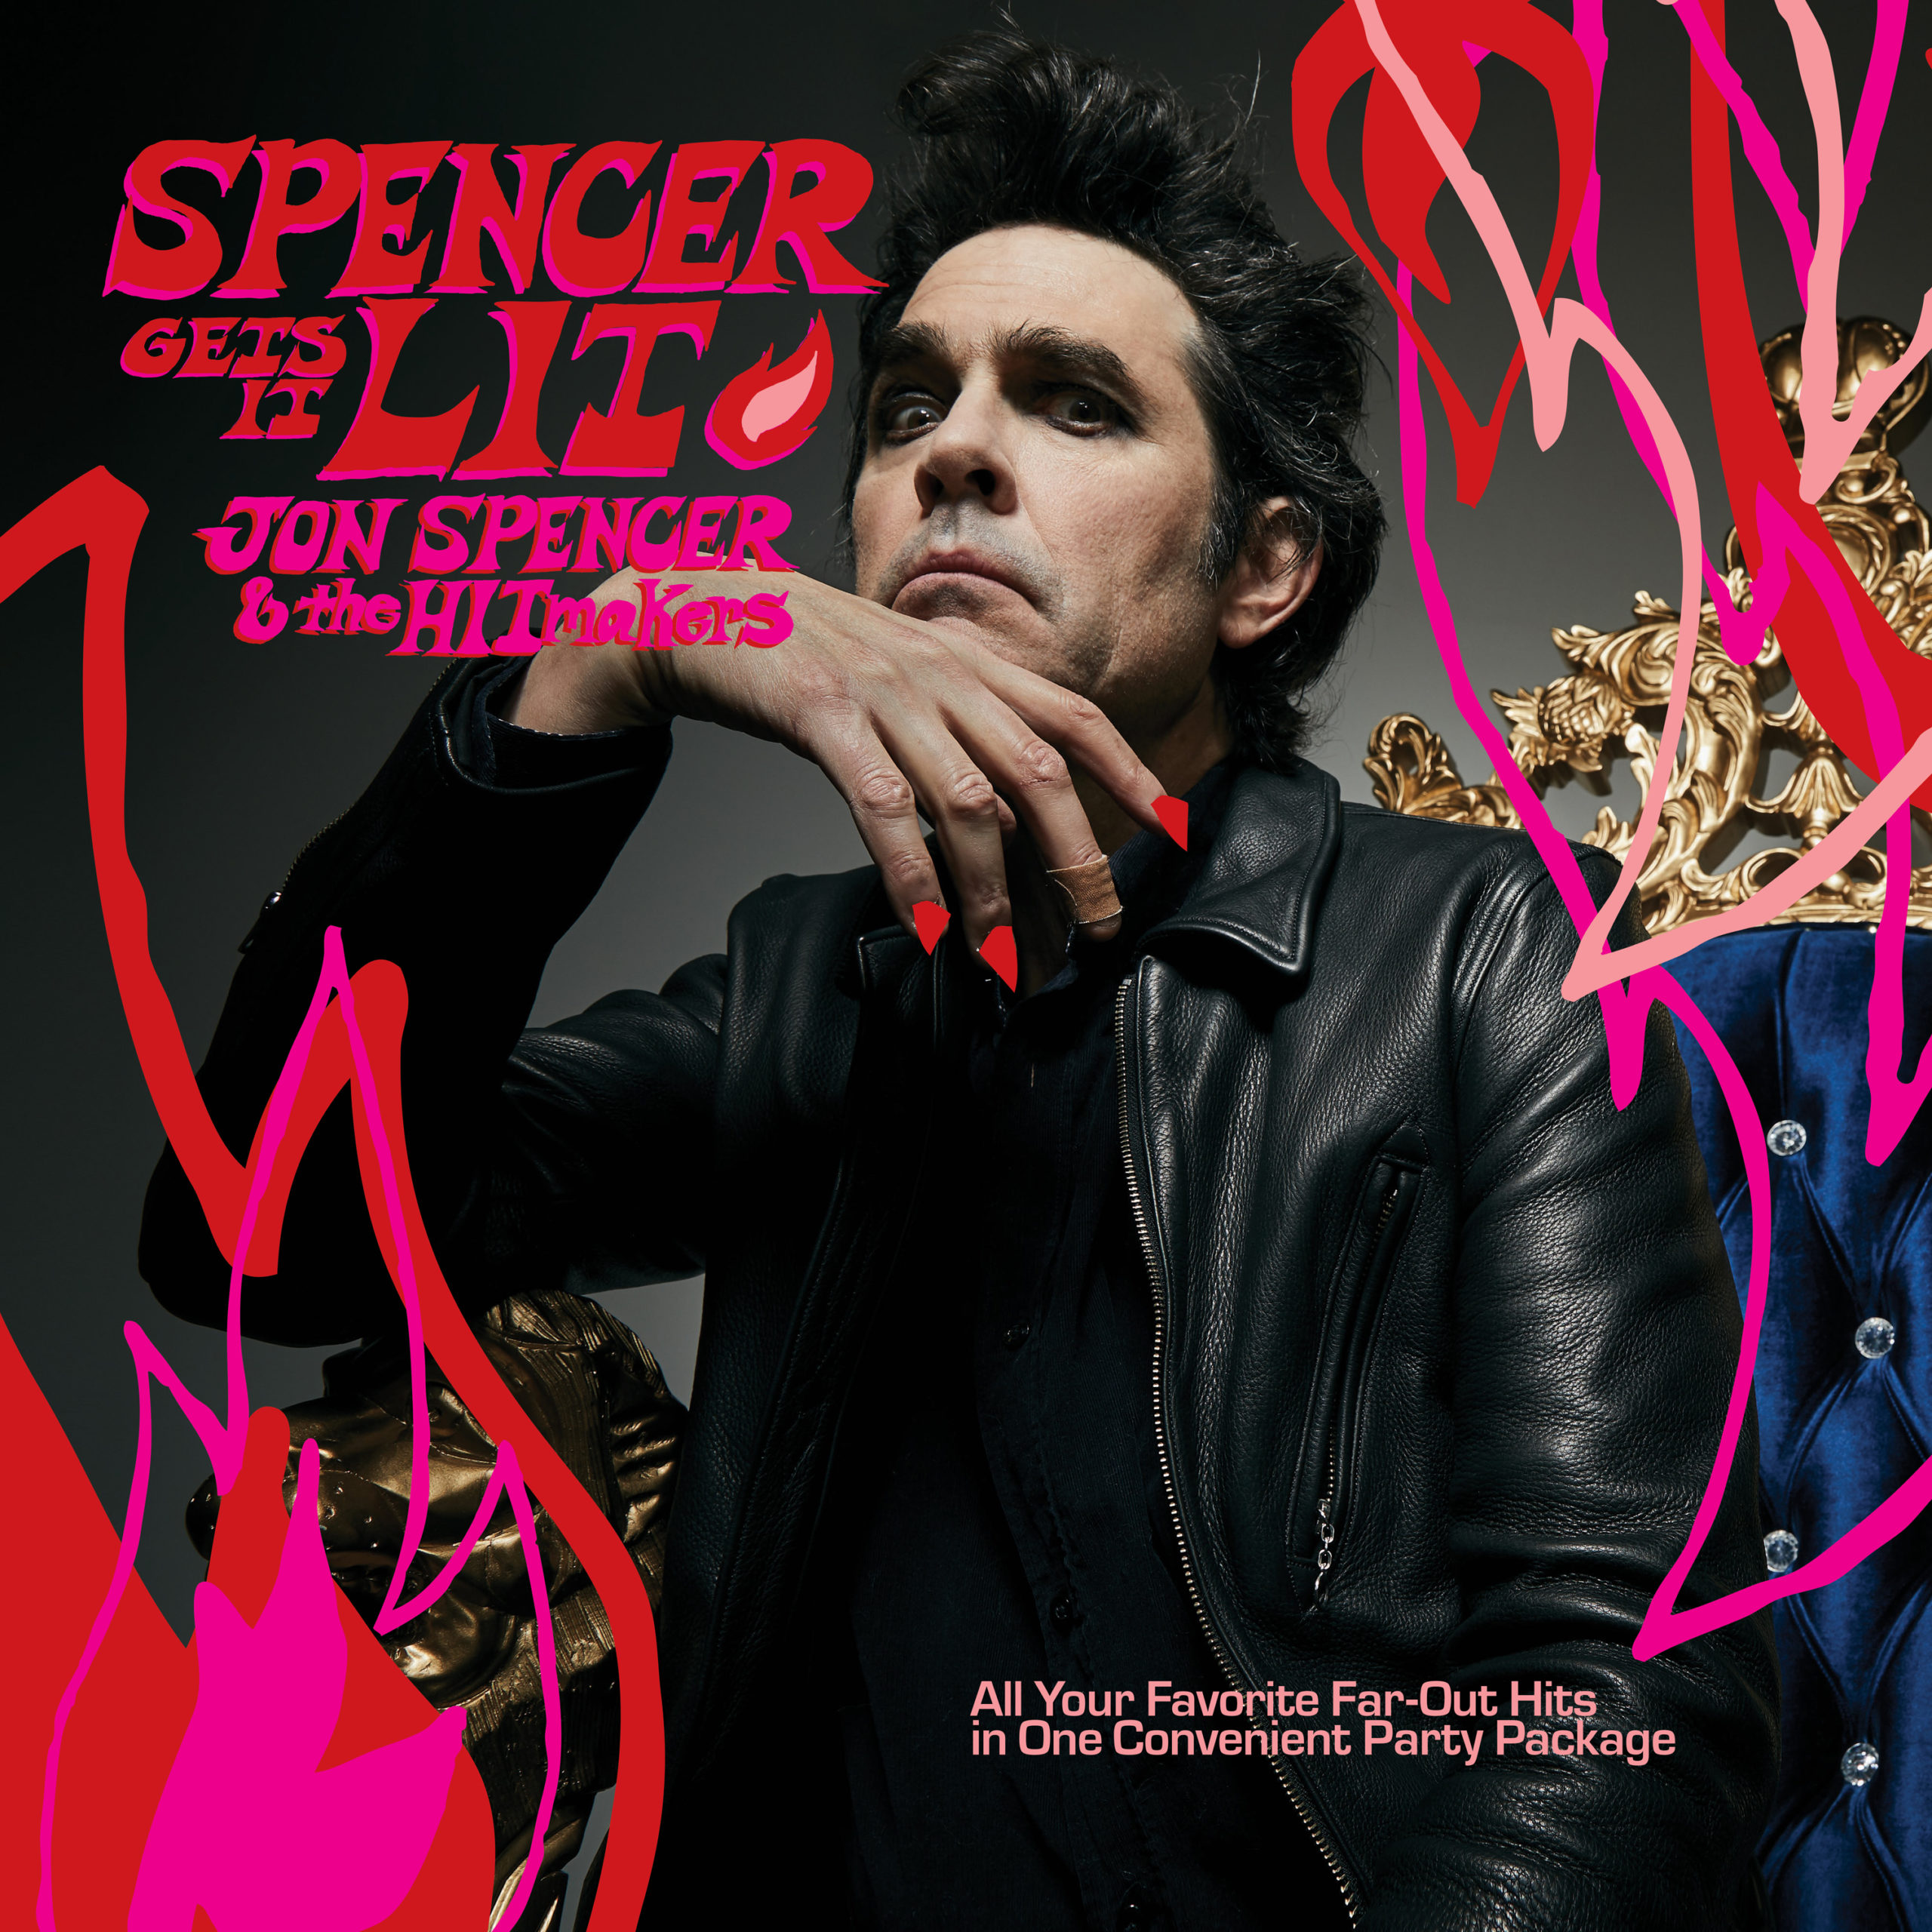 Jon Spencer & The Hitmakers – Spencer gets it lit (rock’n’roll)